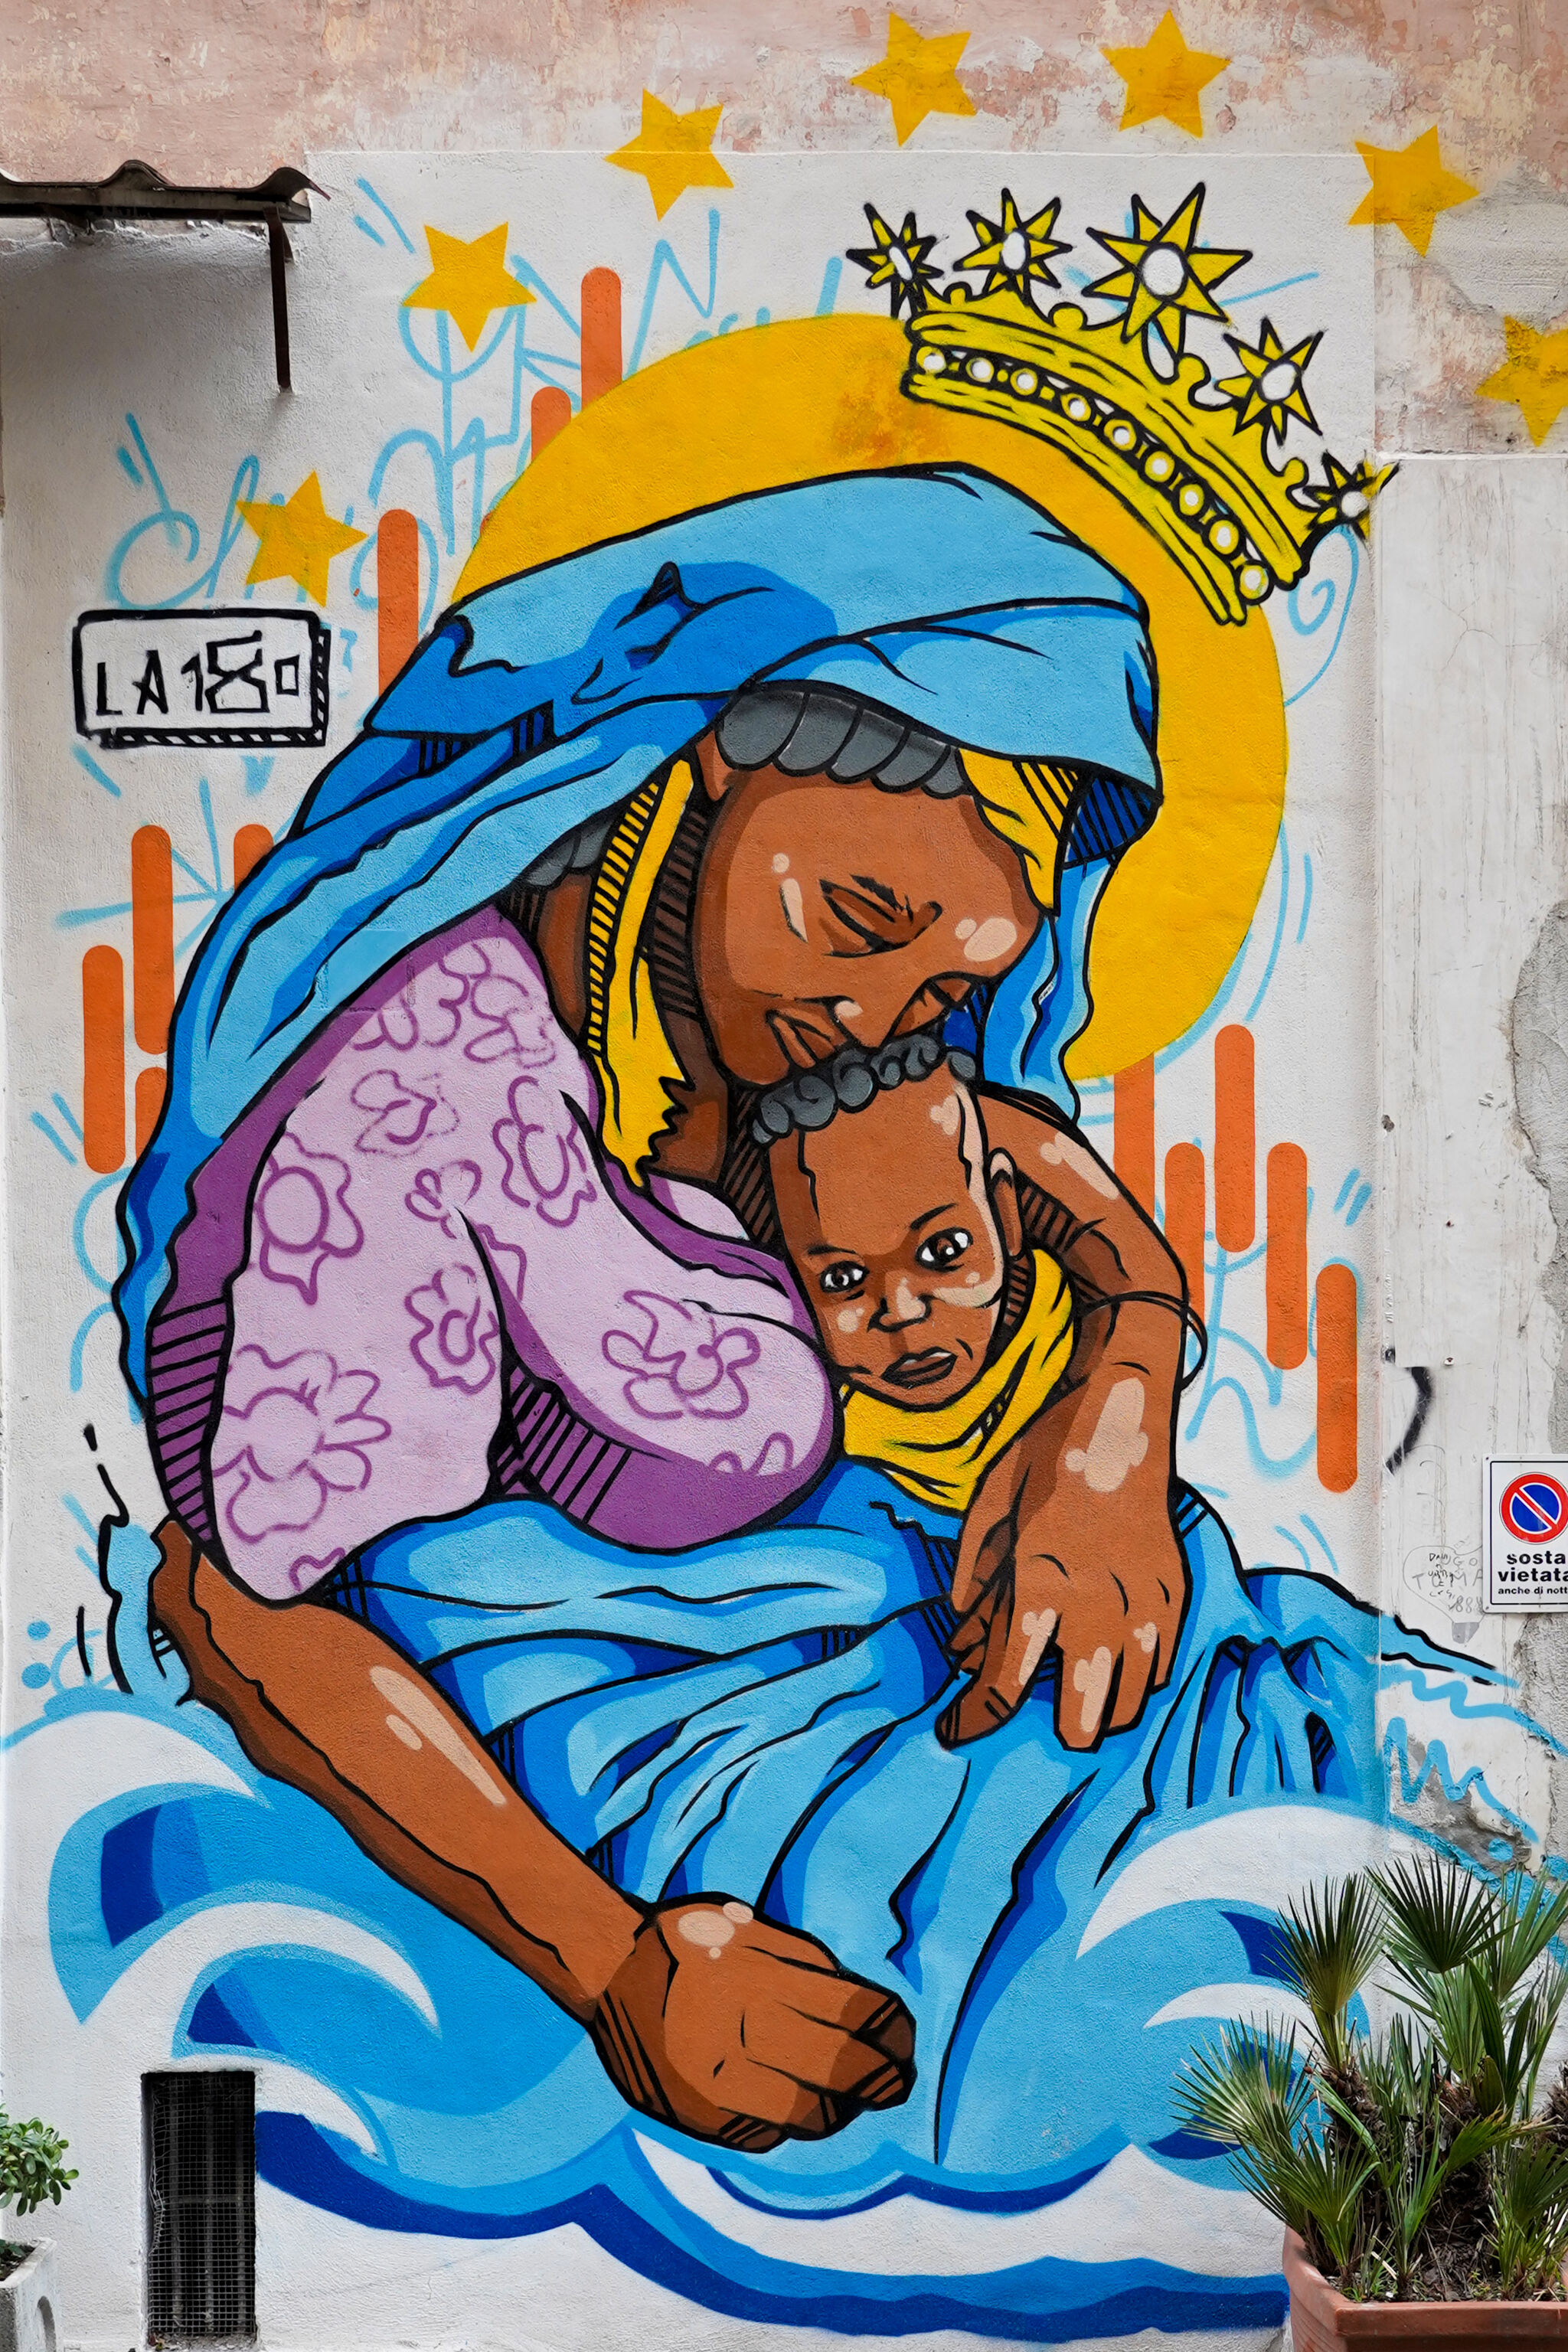 La 180&mdash;„La Madonna dei Rifugiati”